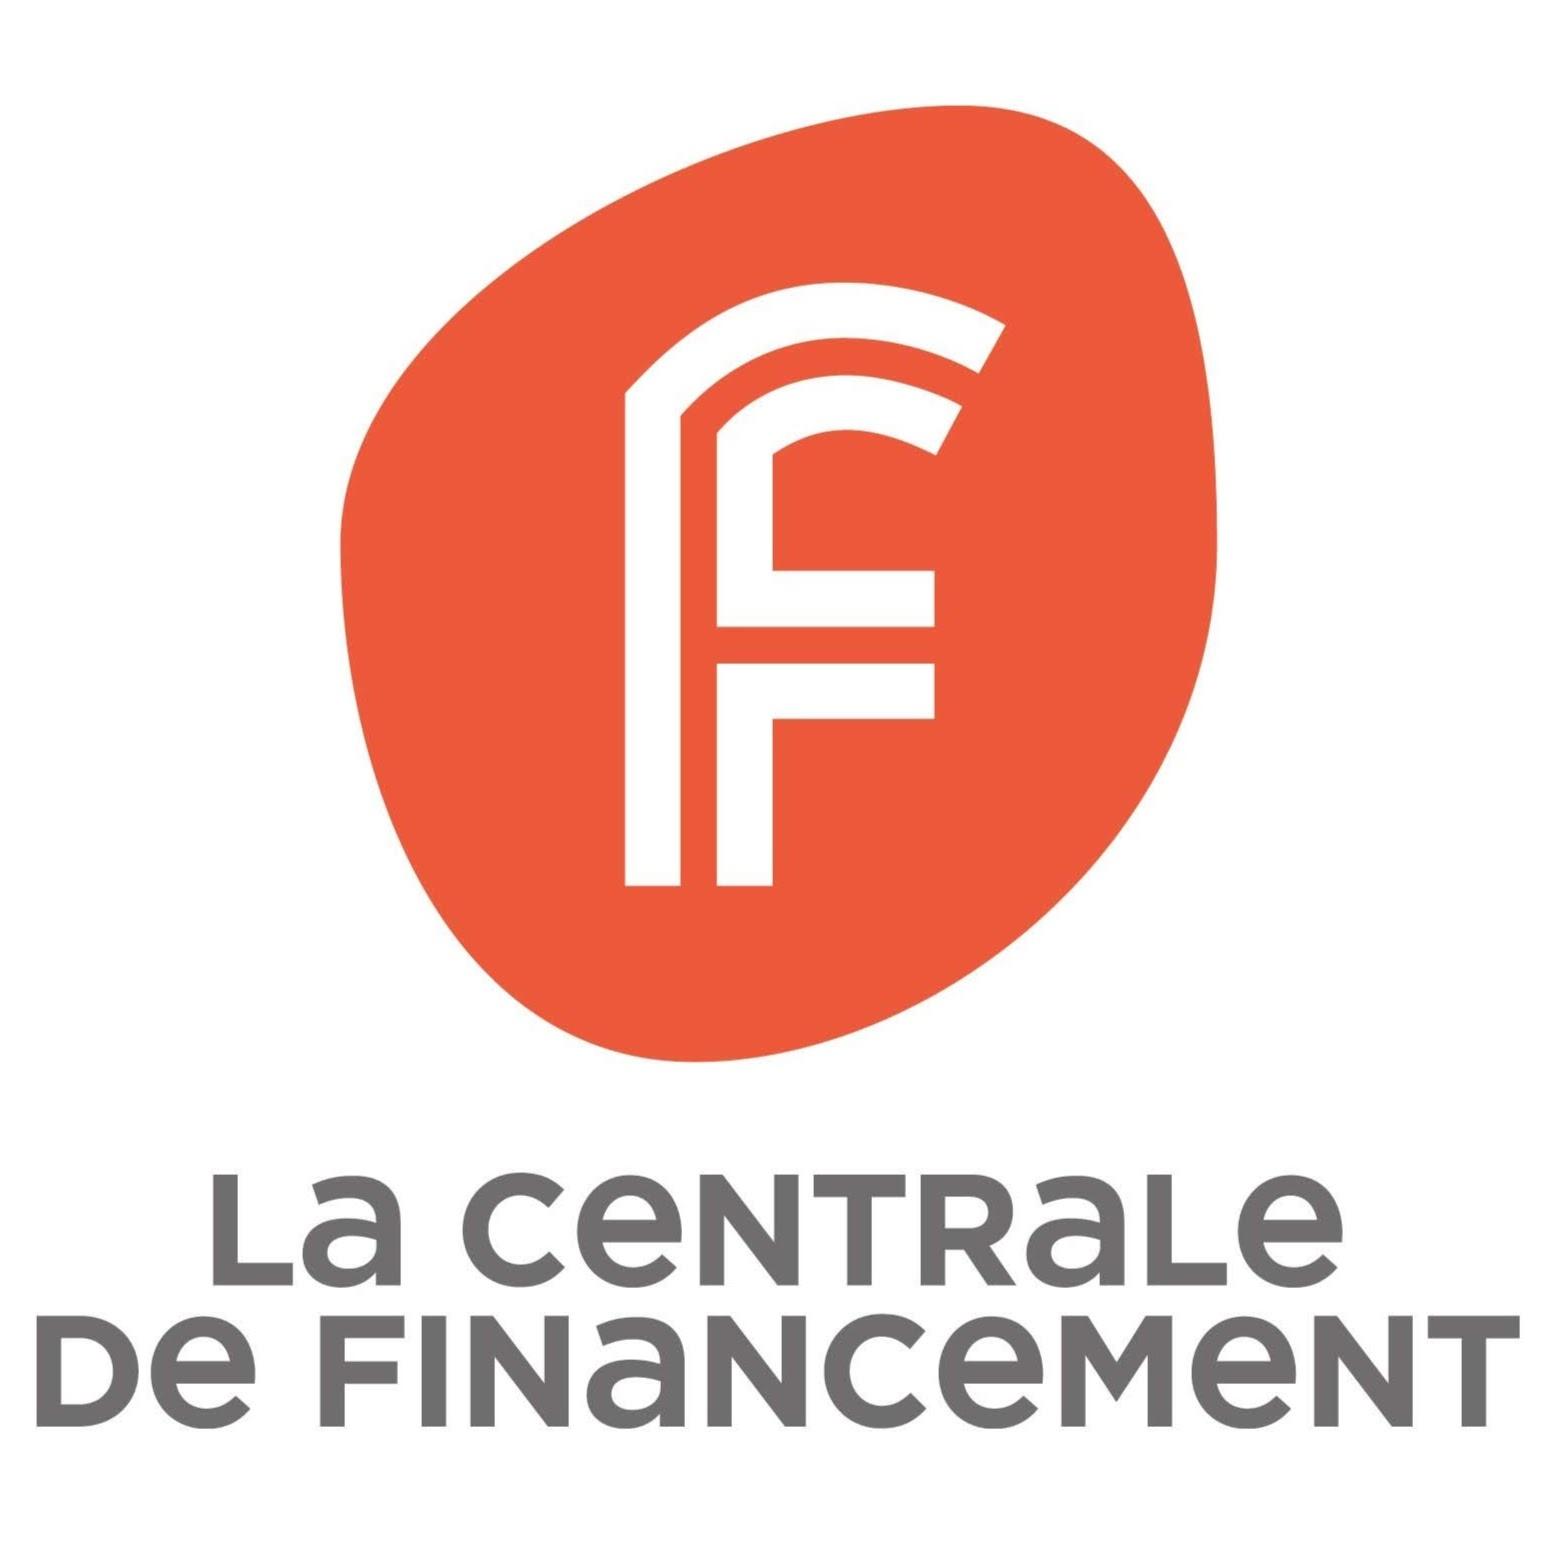 La Centrale De Financement Saint Germain En Laye